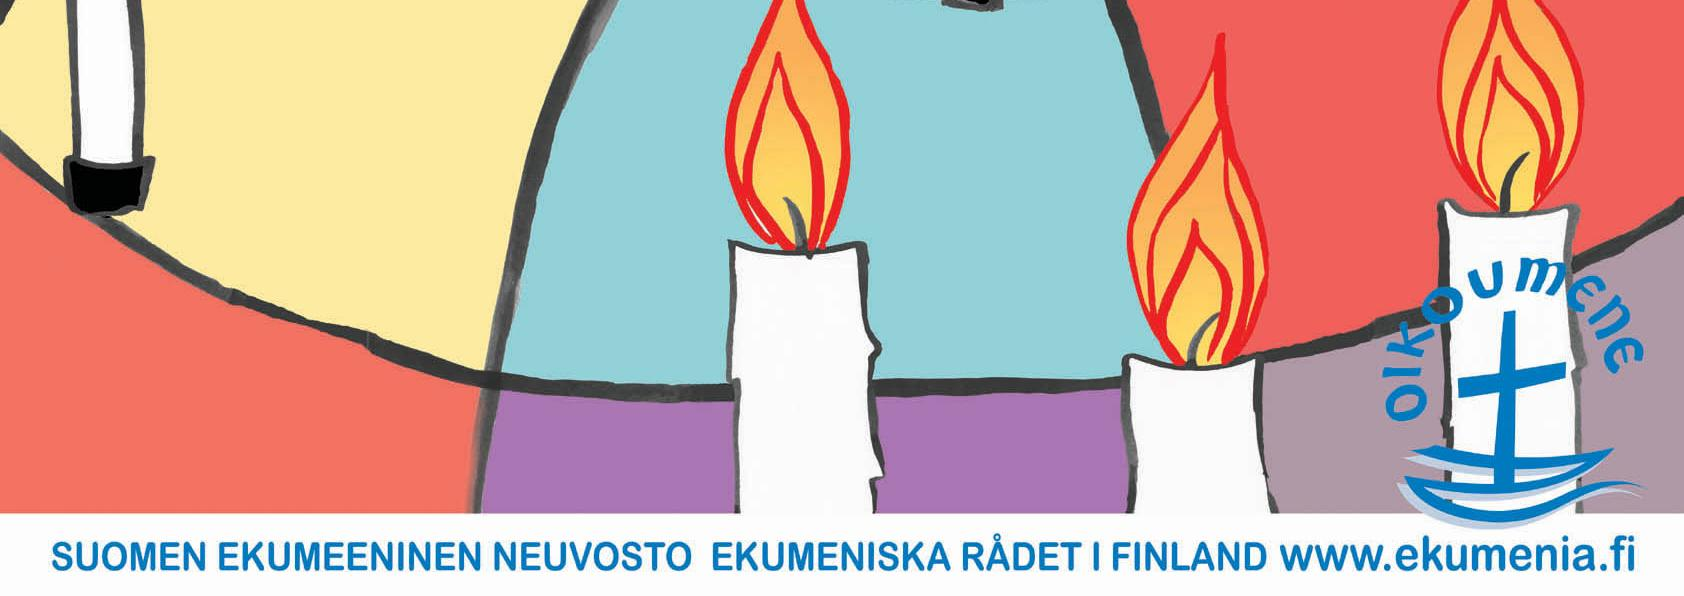 Taiteilija Liina Pajunen on suunnitellut rukousviikolle julisteen. Nelivärinen valoisa juliste on vapaasti ladattavissa netistä: www.ekumenia.fi. Se on pdf- ja jpeg - tiedostoina.